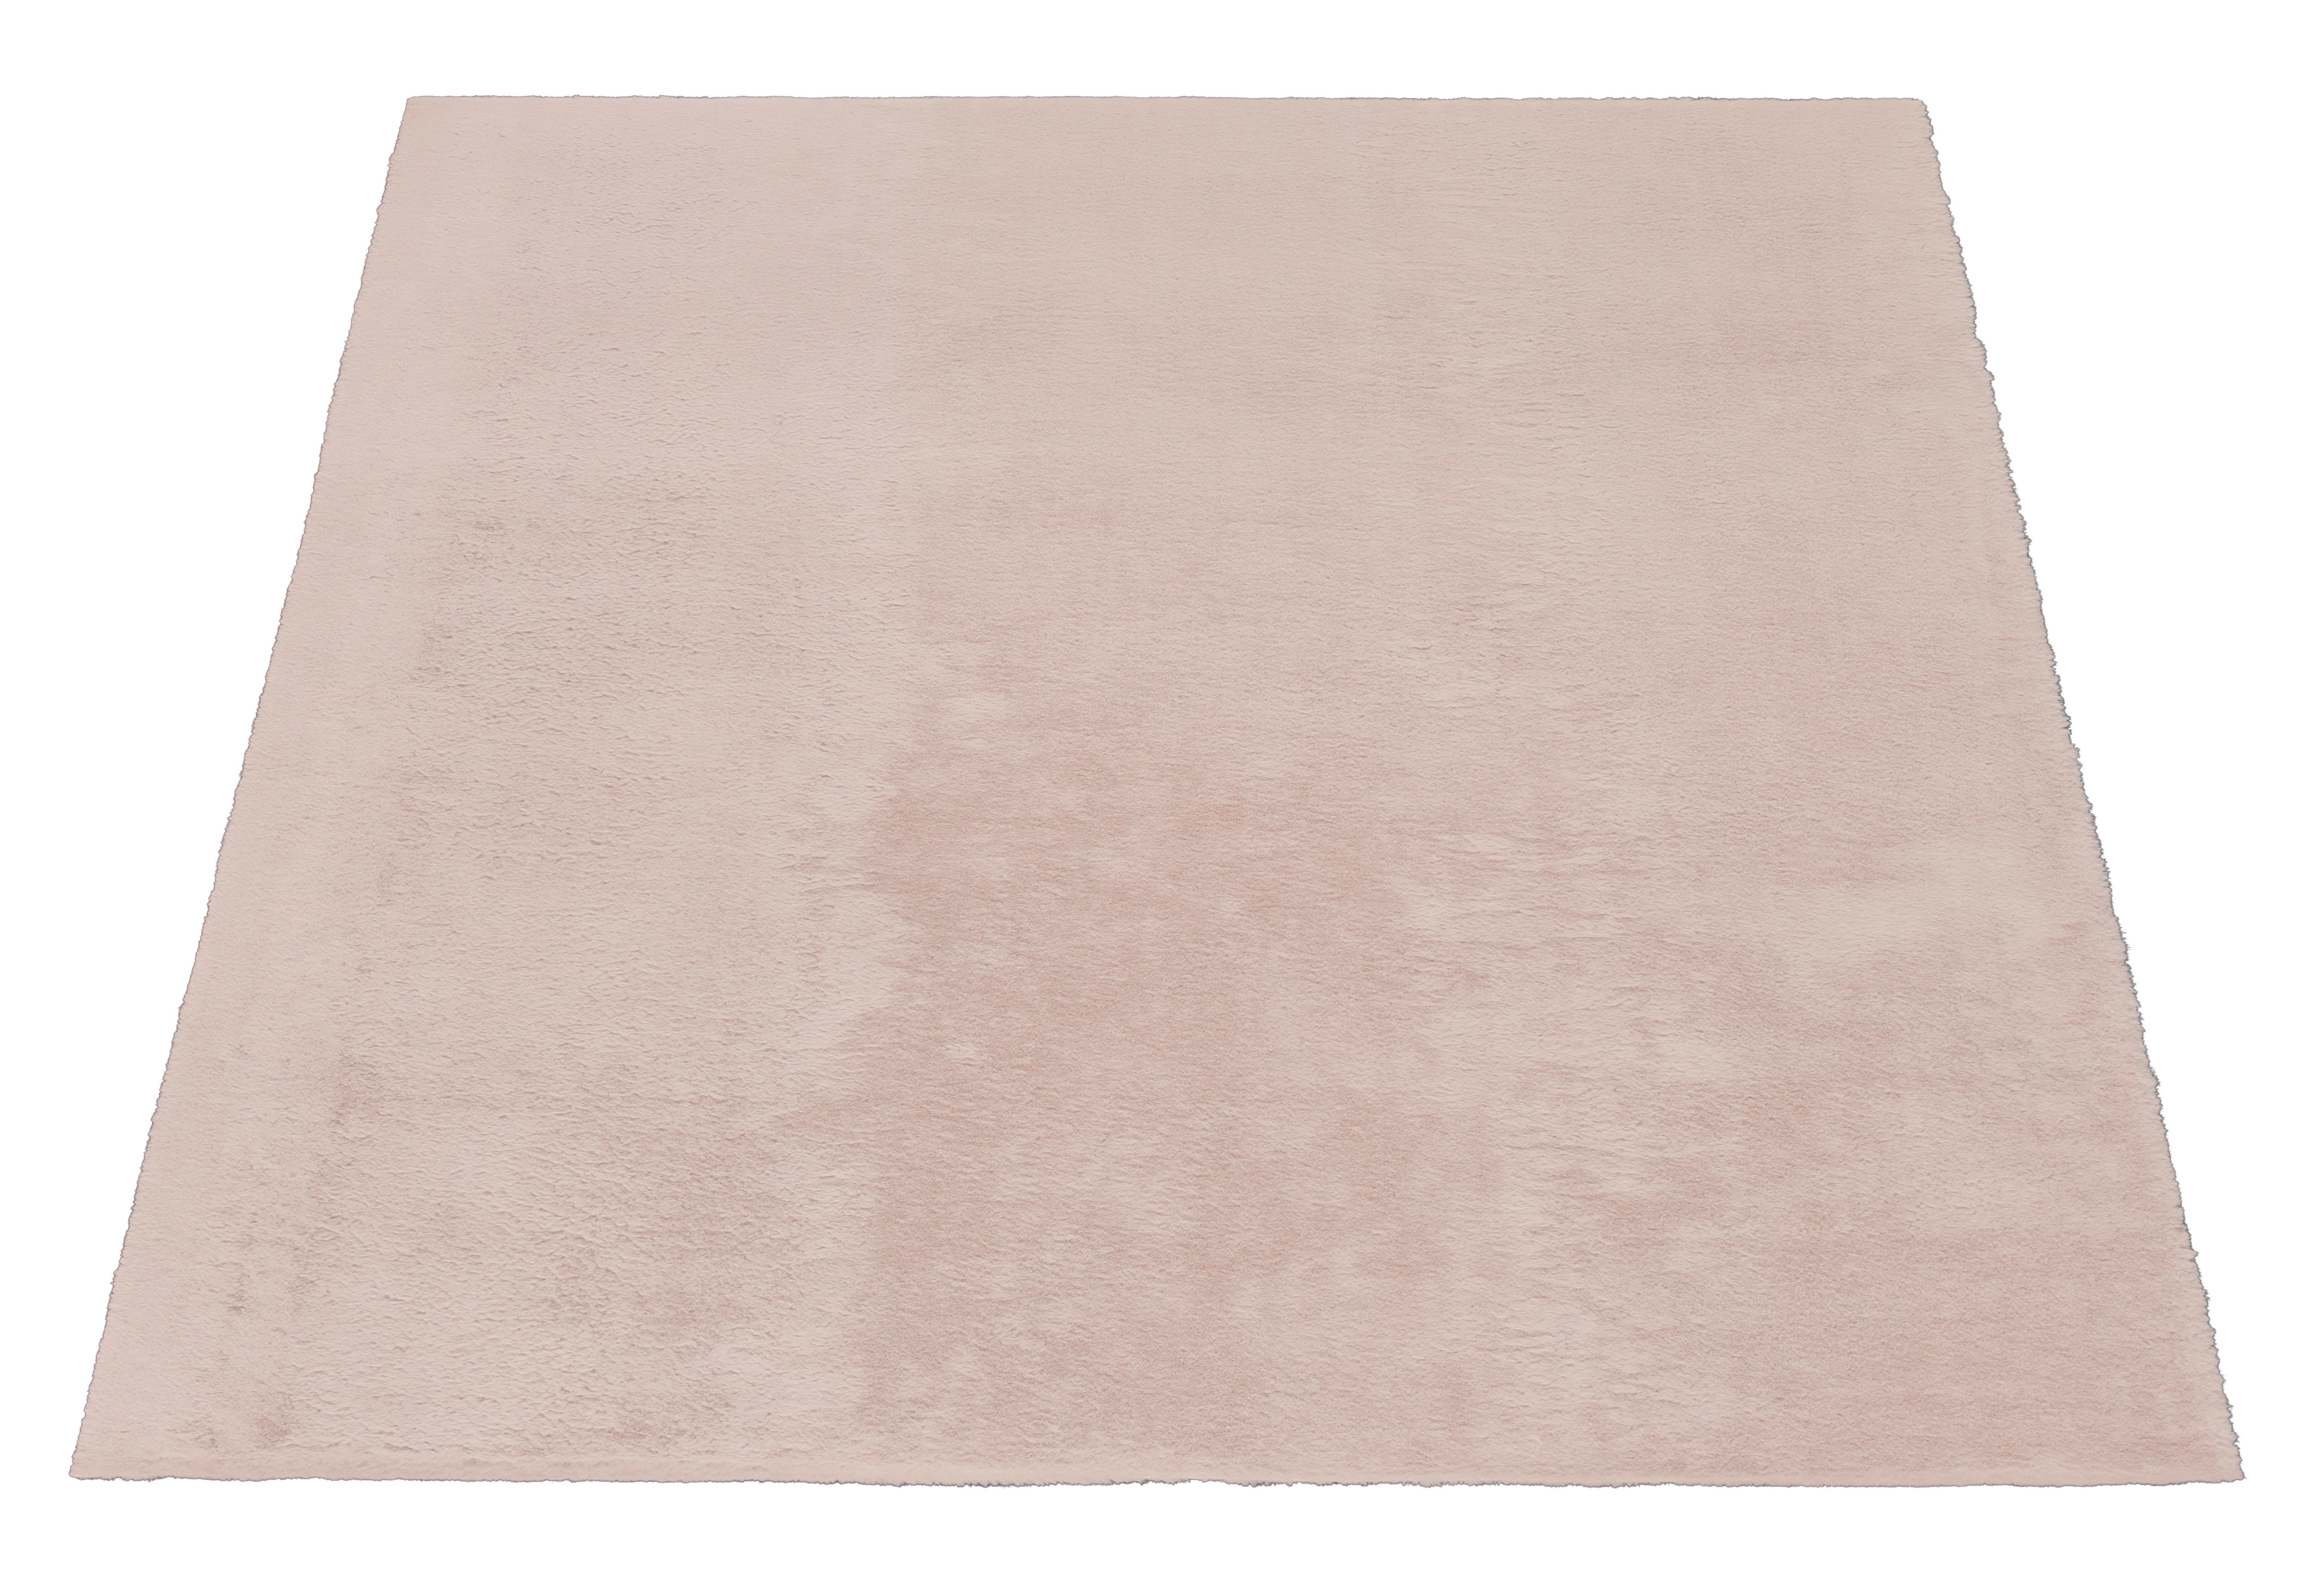 Teppich Fuzzy Eco rosa B/L: ca. 200x280 cm Fuzzy Eco - rosa (200,00/280,00cm)